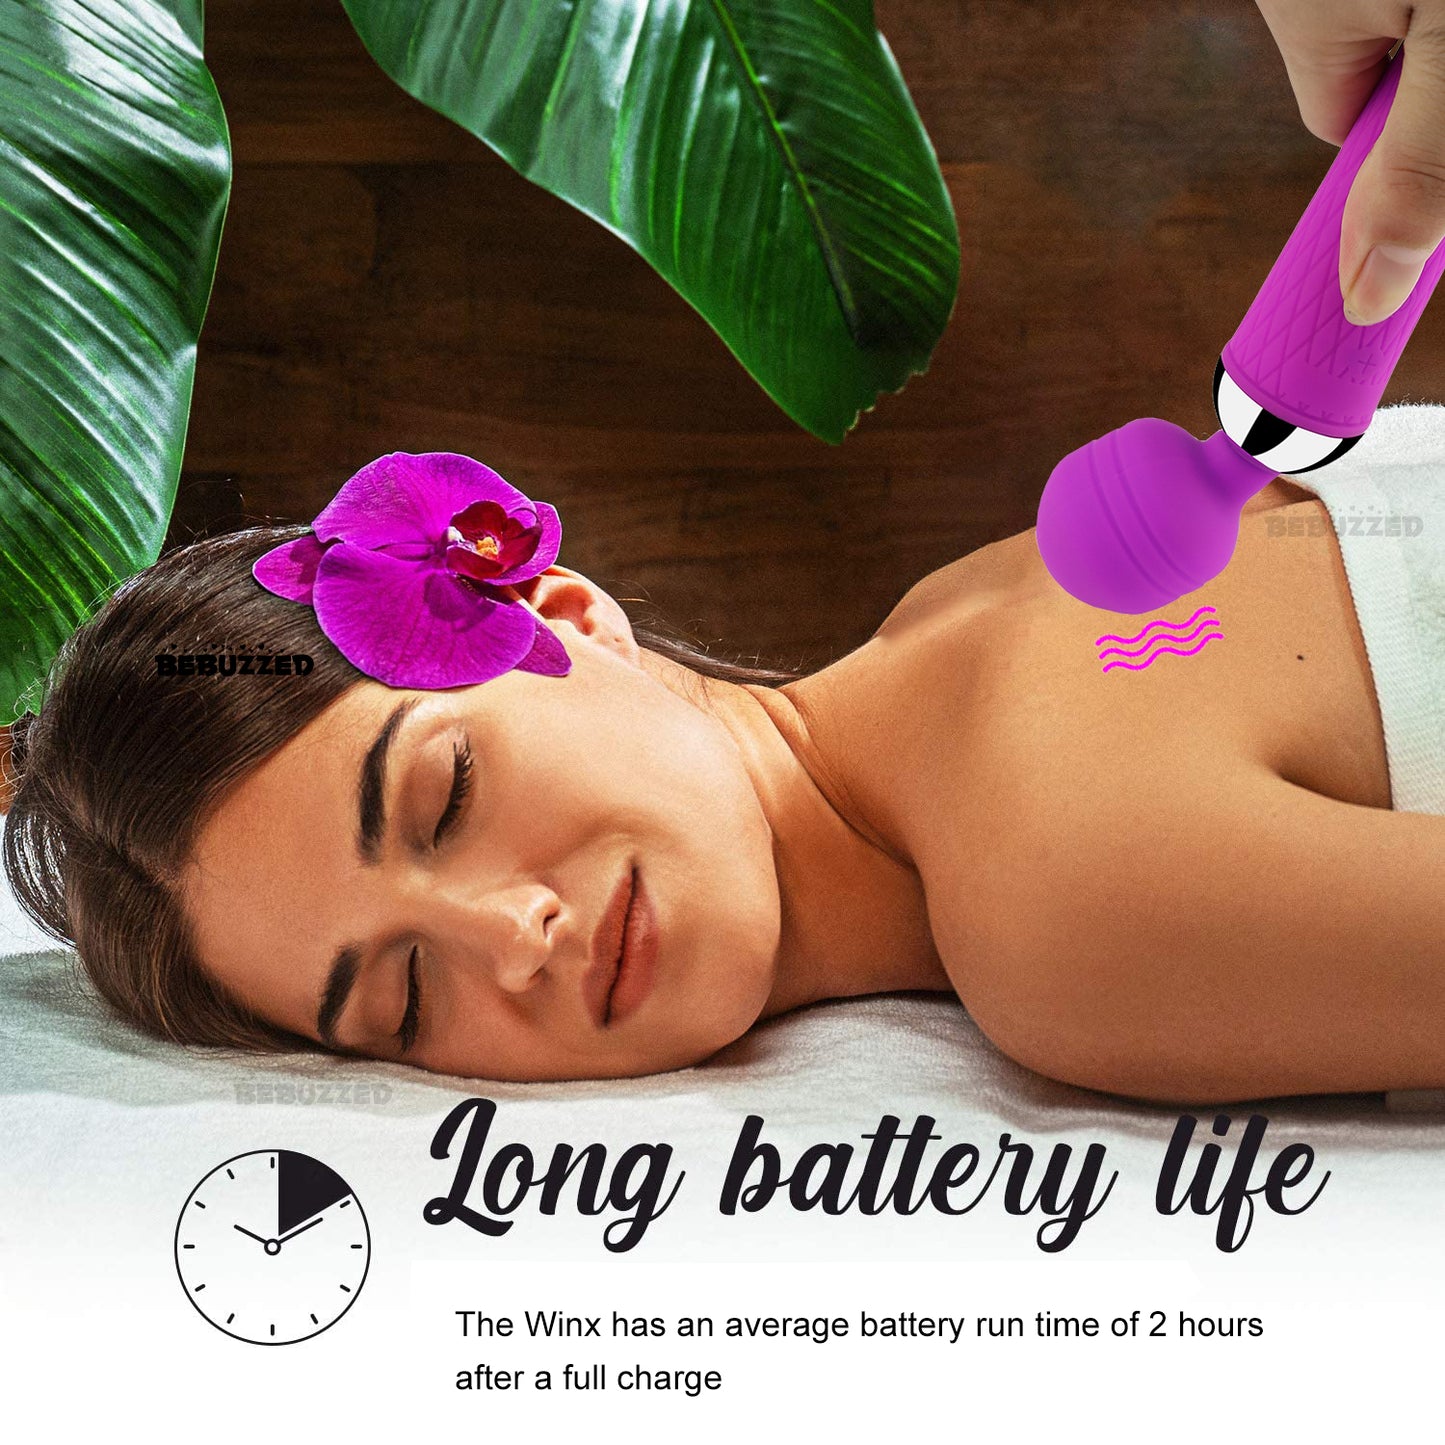 NEW Powerful Cordless Massage Magic Body Wand Personal Massager Waterproof USB